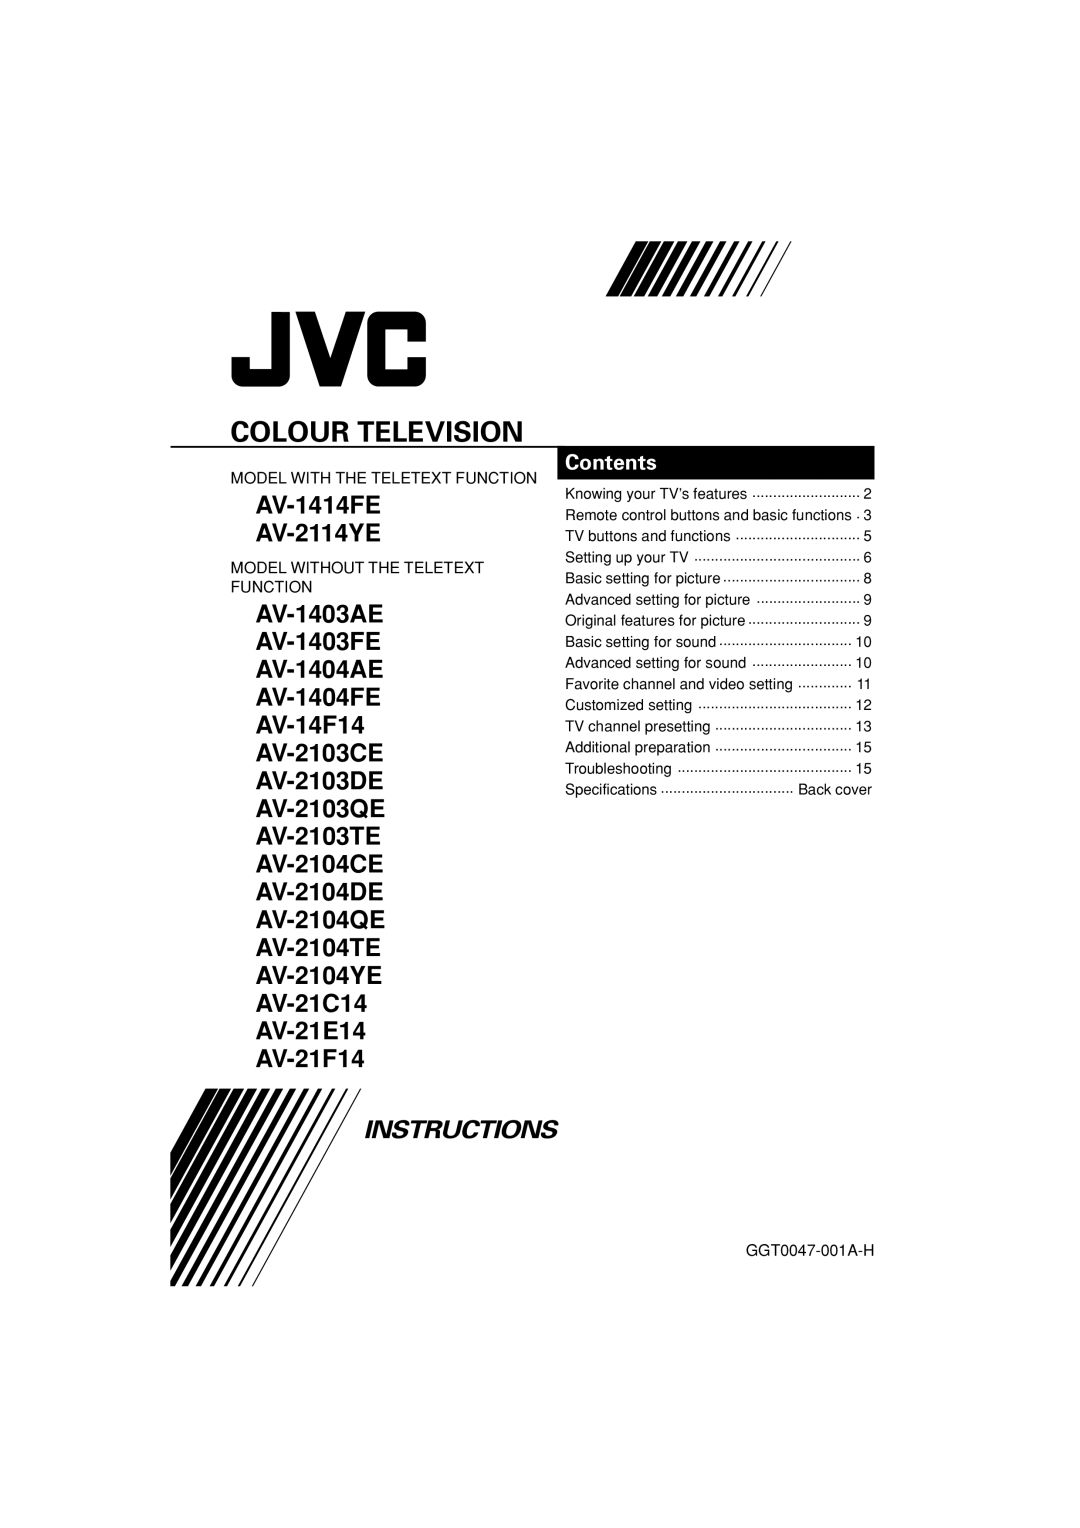 JVC specifications Colour Television, AV-1414FE AV-2114YE, AV-21C14 AV-21E14 AV-21F14, Instructions, Contents, Back cover 